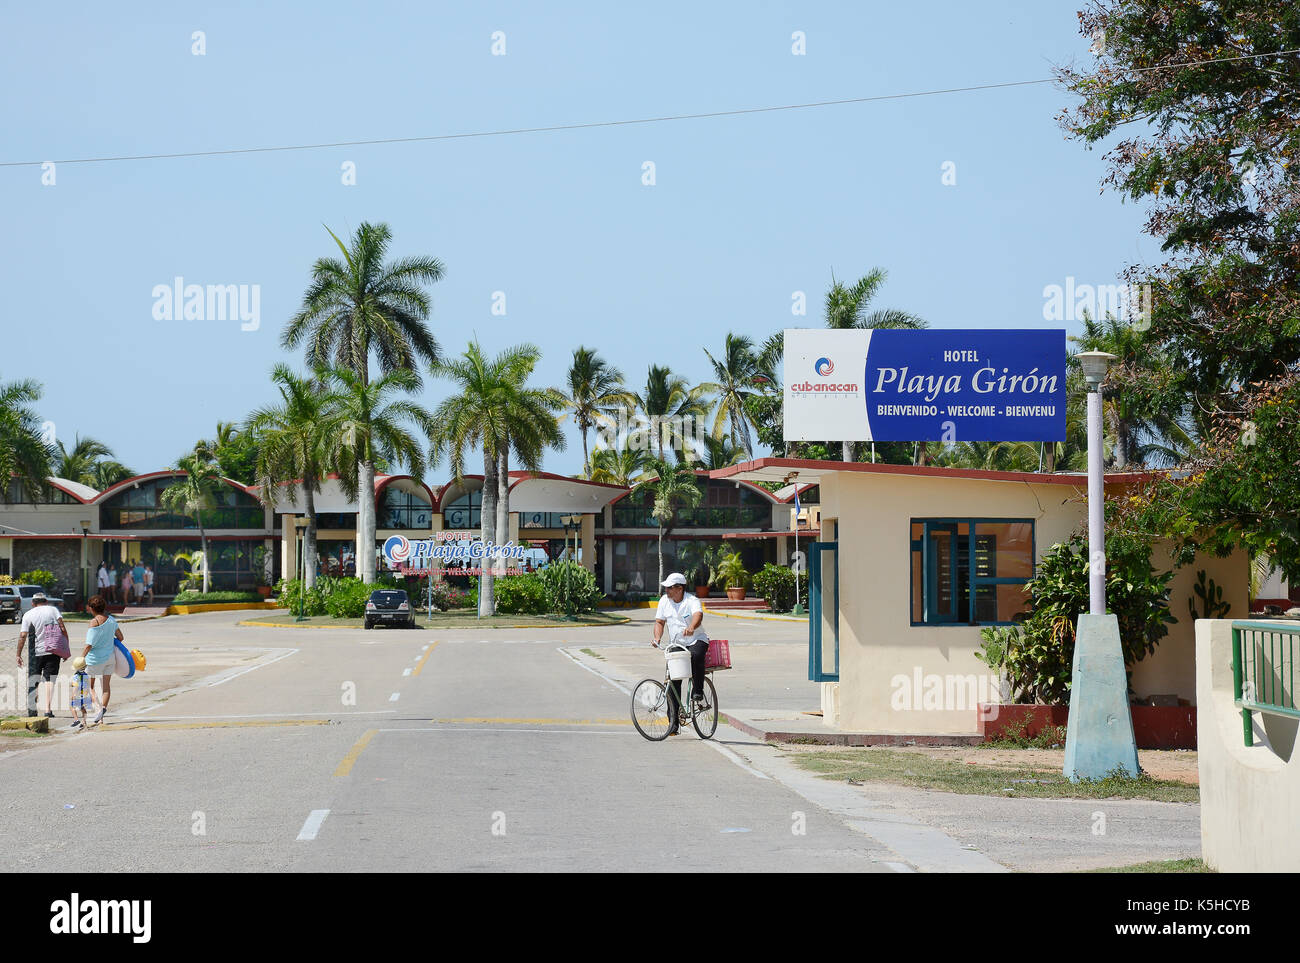 Playa Giron, Cuba - juillet 24, 2016 : baie des Cochons. hôtel Playa Giron est une destination favorite pour les plongeurs. Banque D'Images